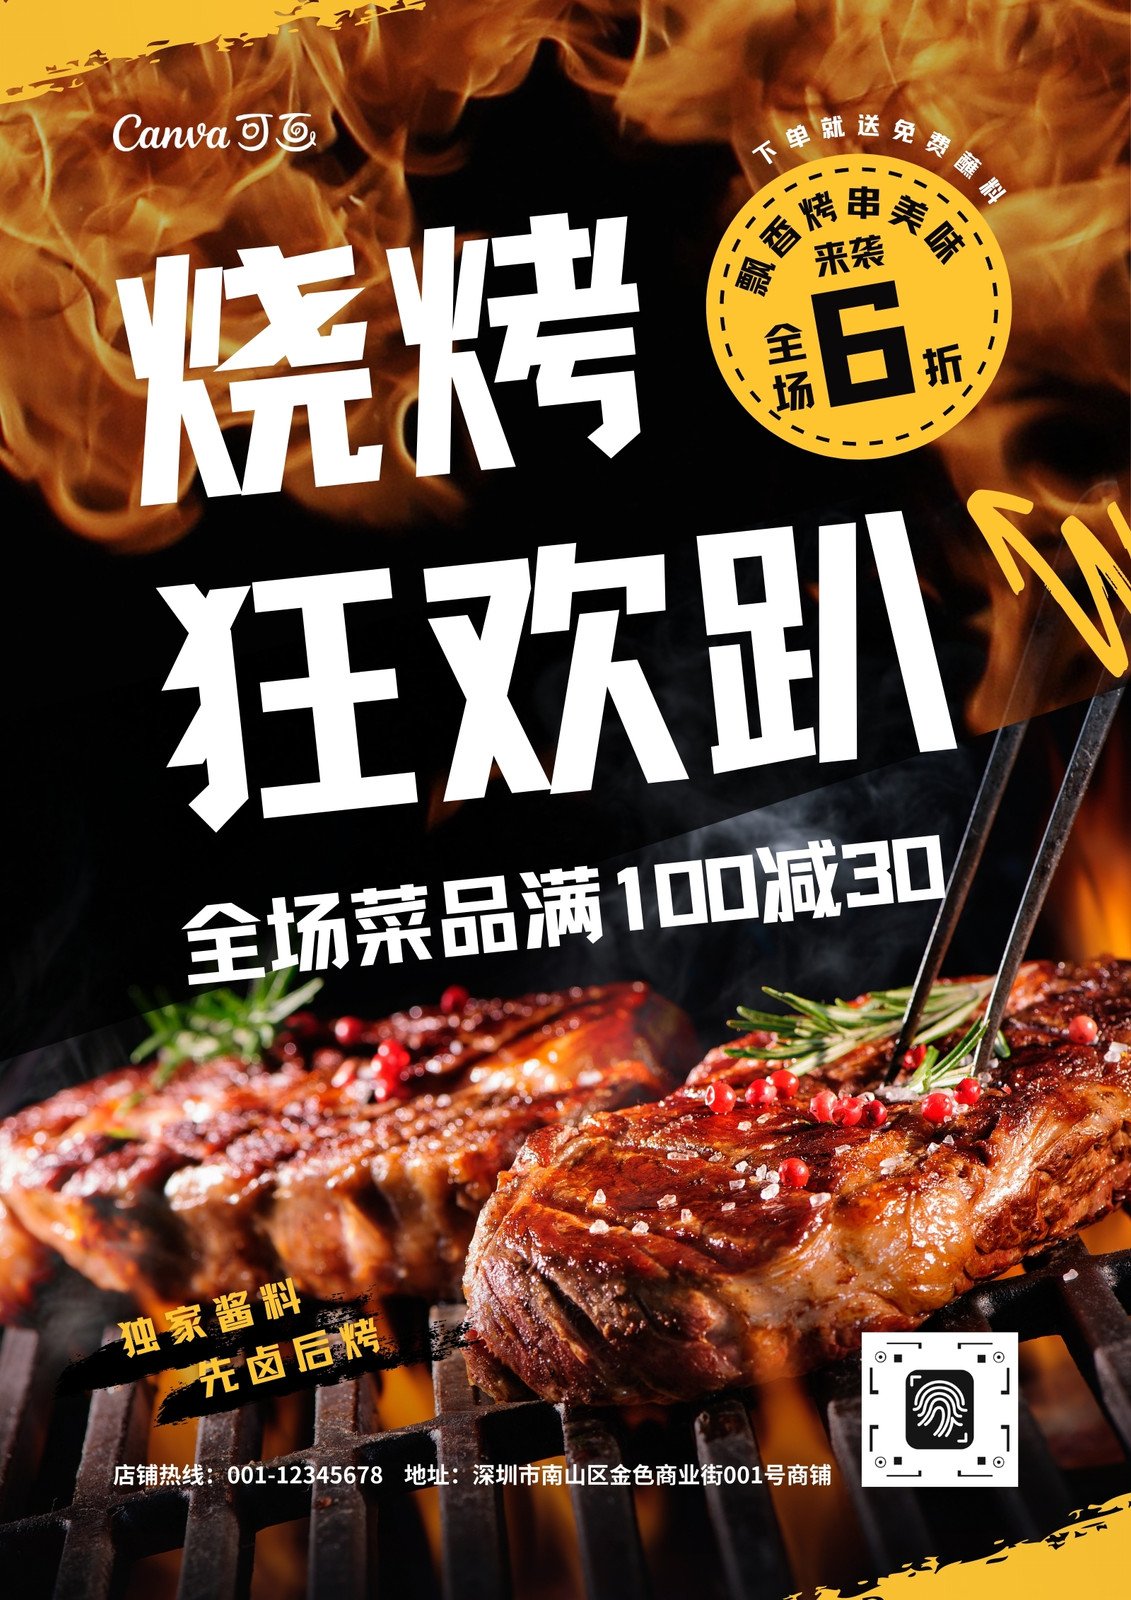 黄黑色火焰烧烤肉现代餐饮促销中文海报 模板 Canva可画